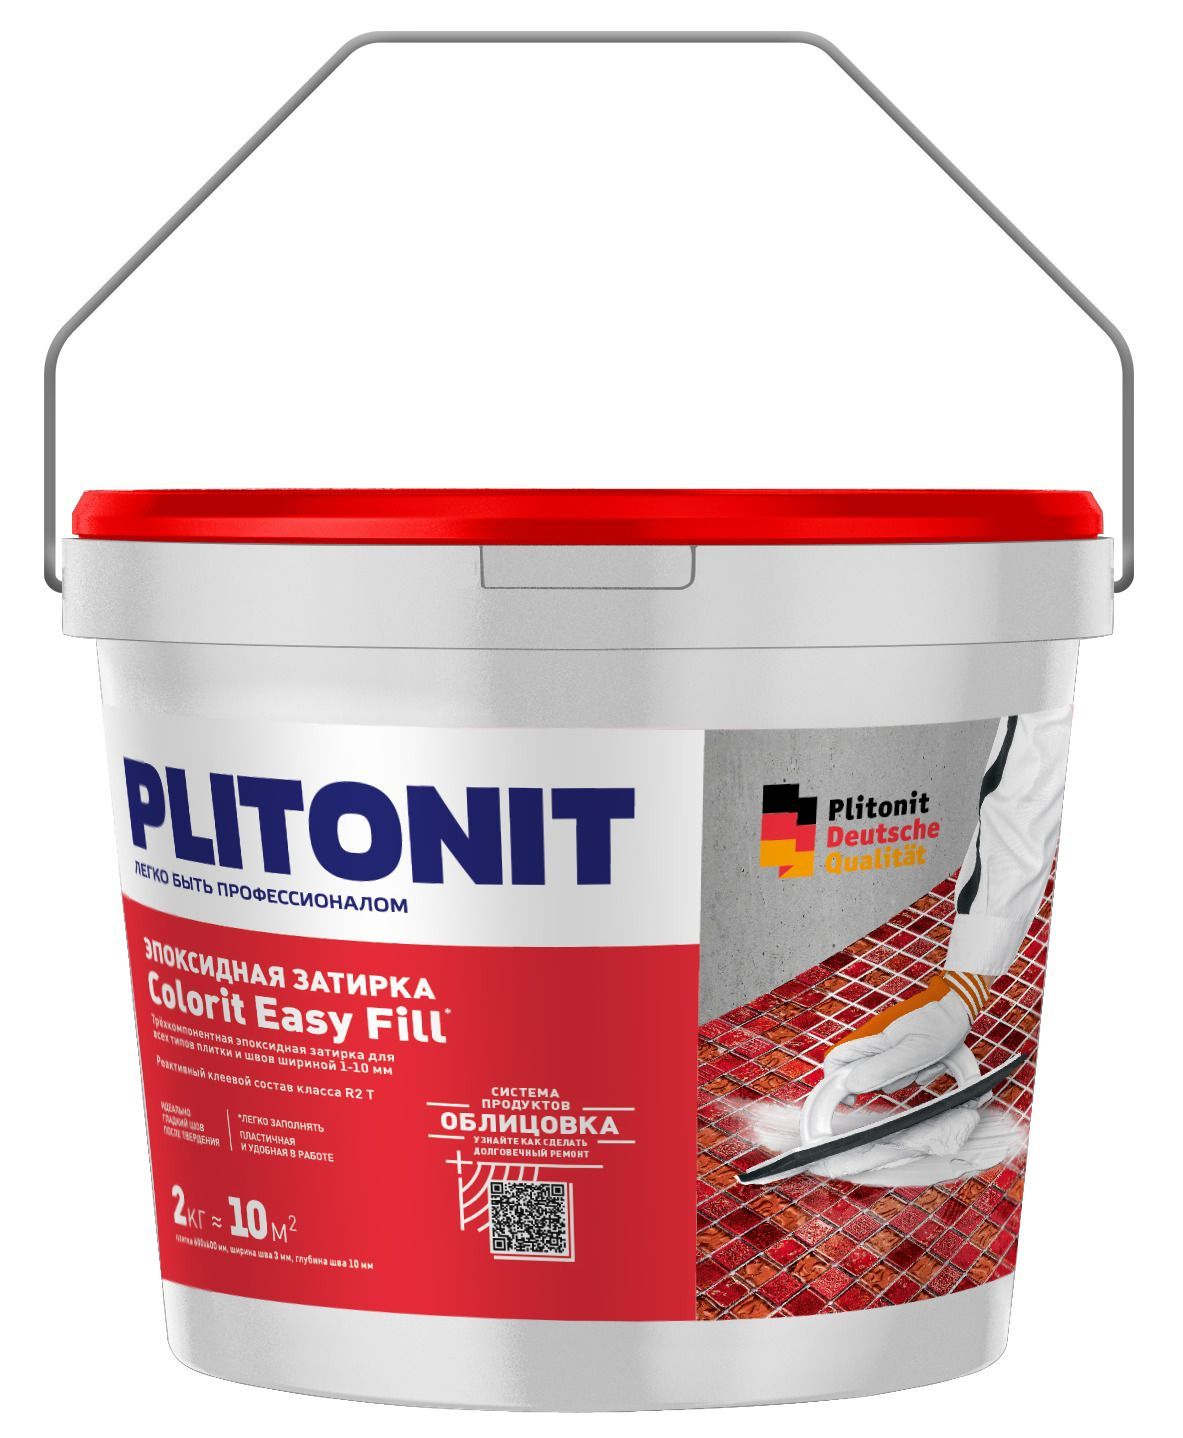 Купить Затирка эпоксидная PLITONIT Colorit EasyFill серый 2кг (ведро) Н008644